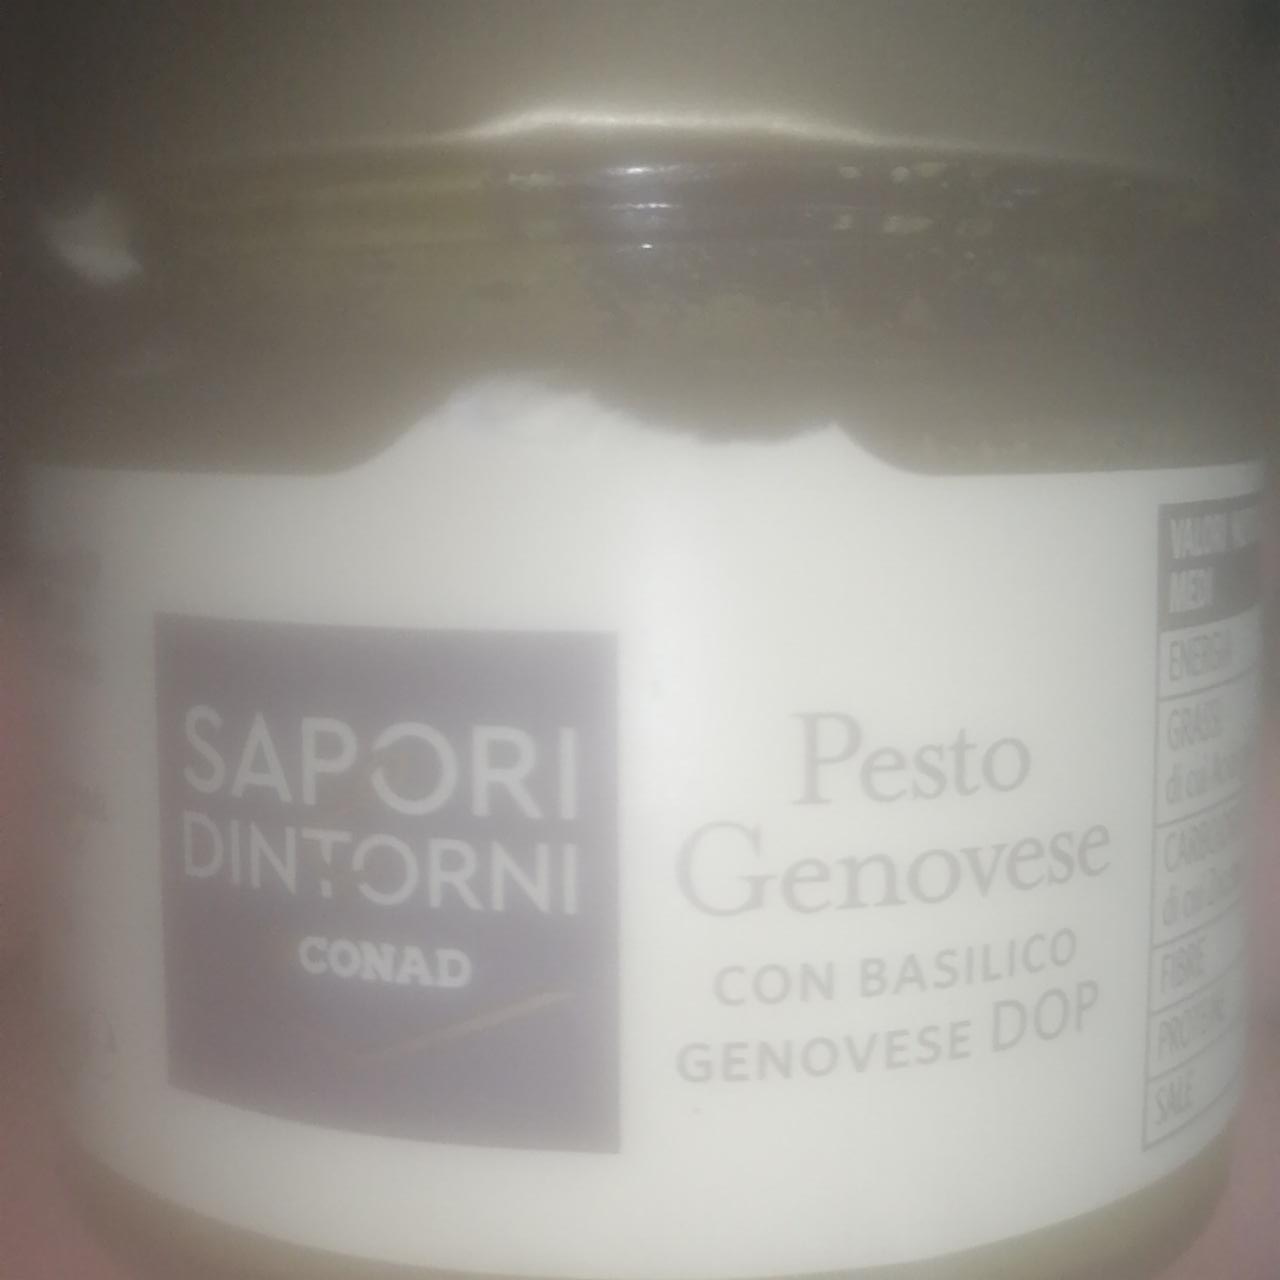 Fotografie - Pesto Genovese con basilico genovese DOP Conad